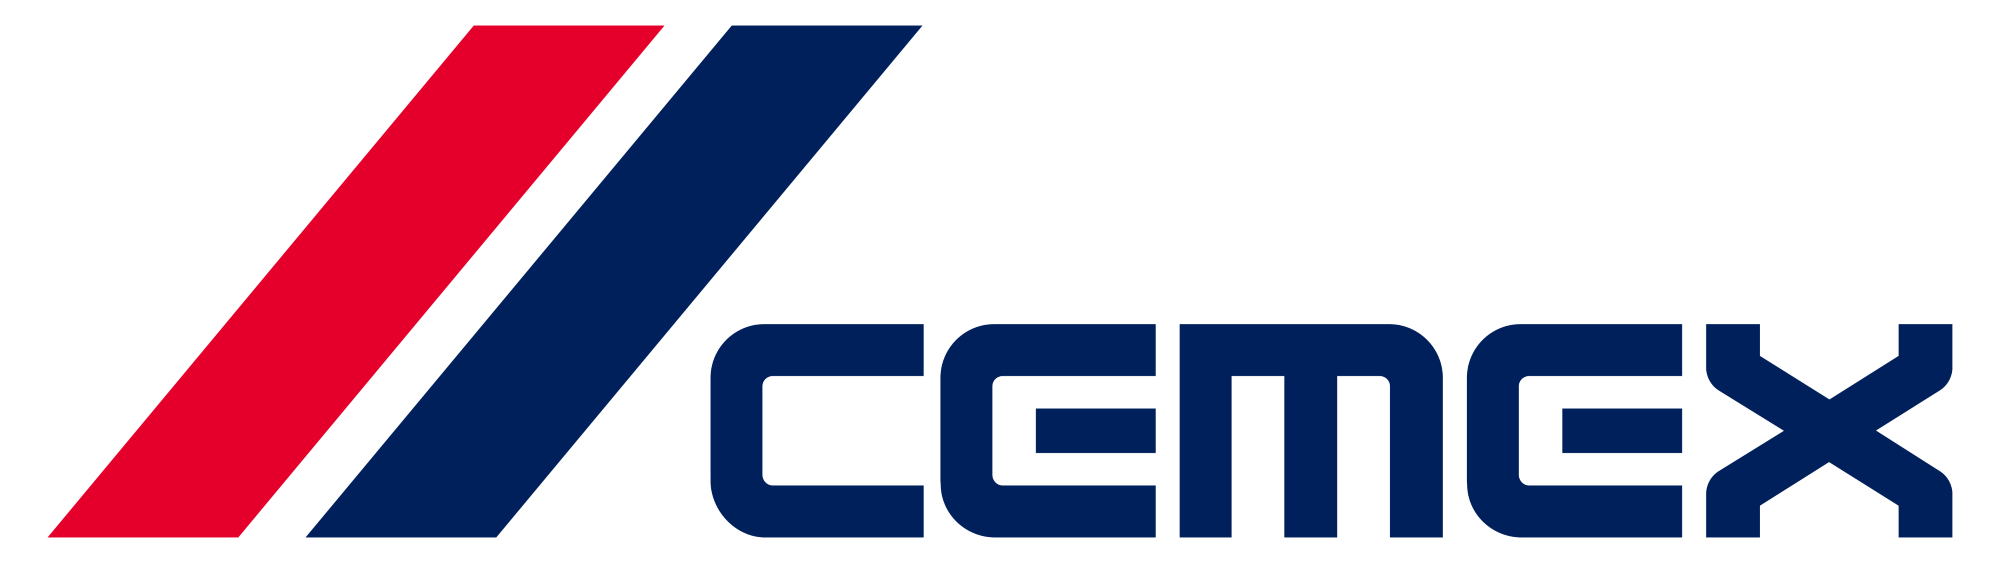 CEMEX Logo (Color).png